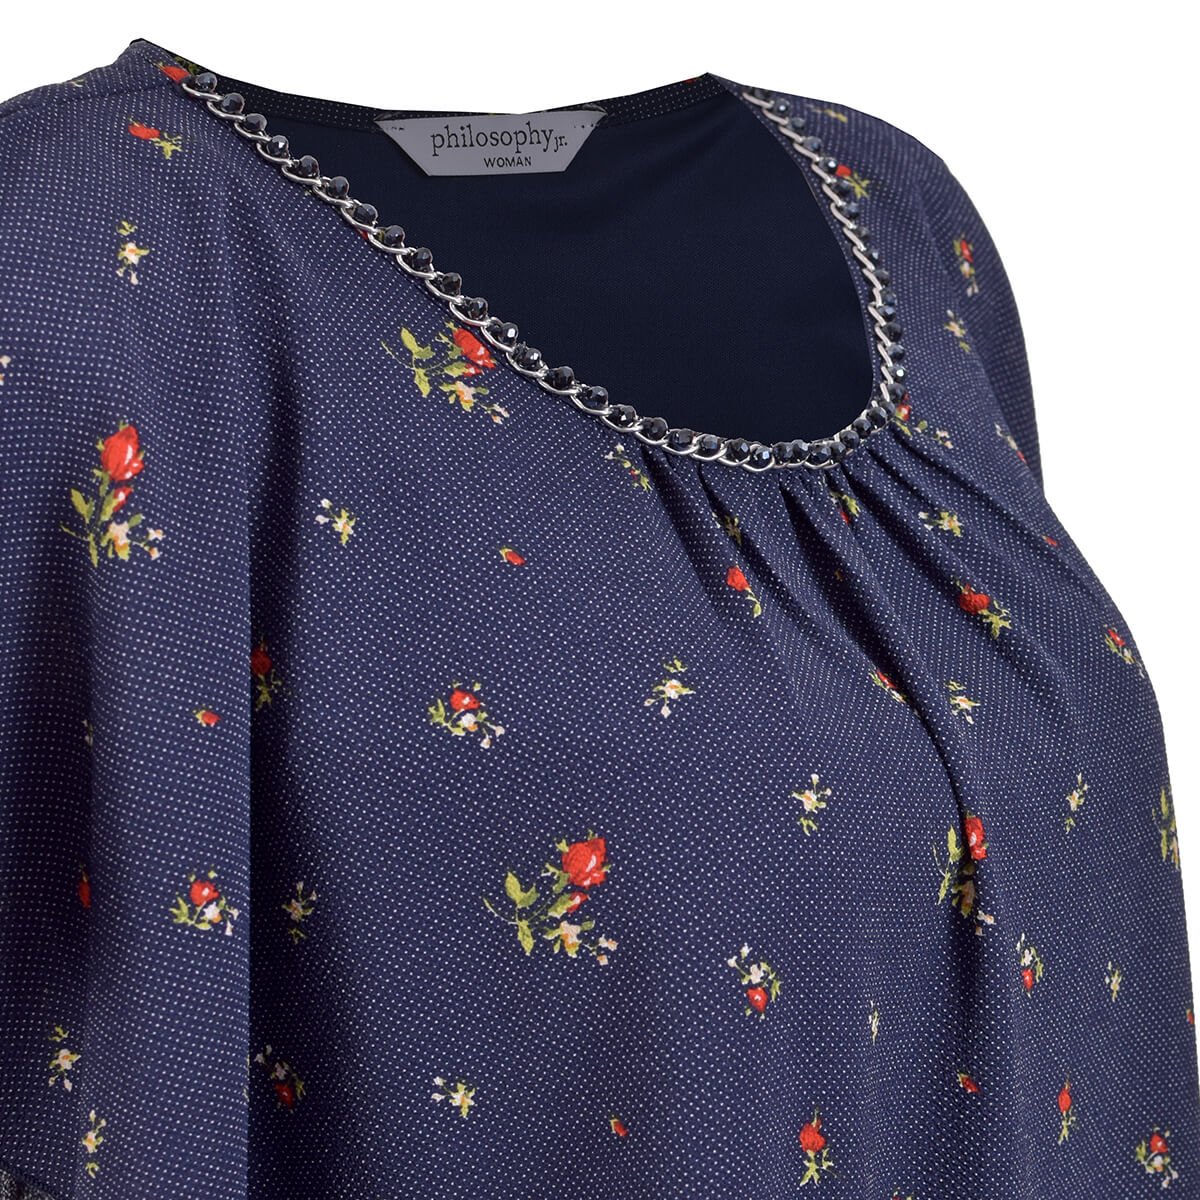 Blusa para Dama Escote con Collar Y Estampado de Flores Philosophy Jr. Woman